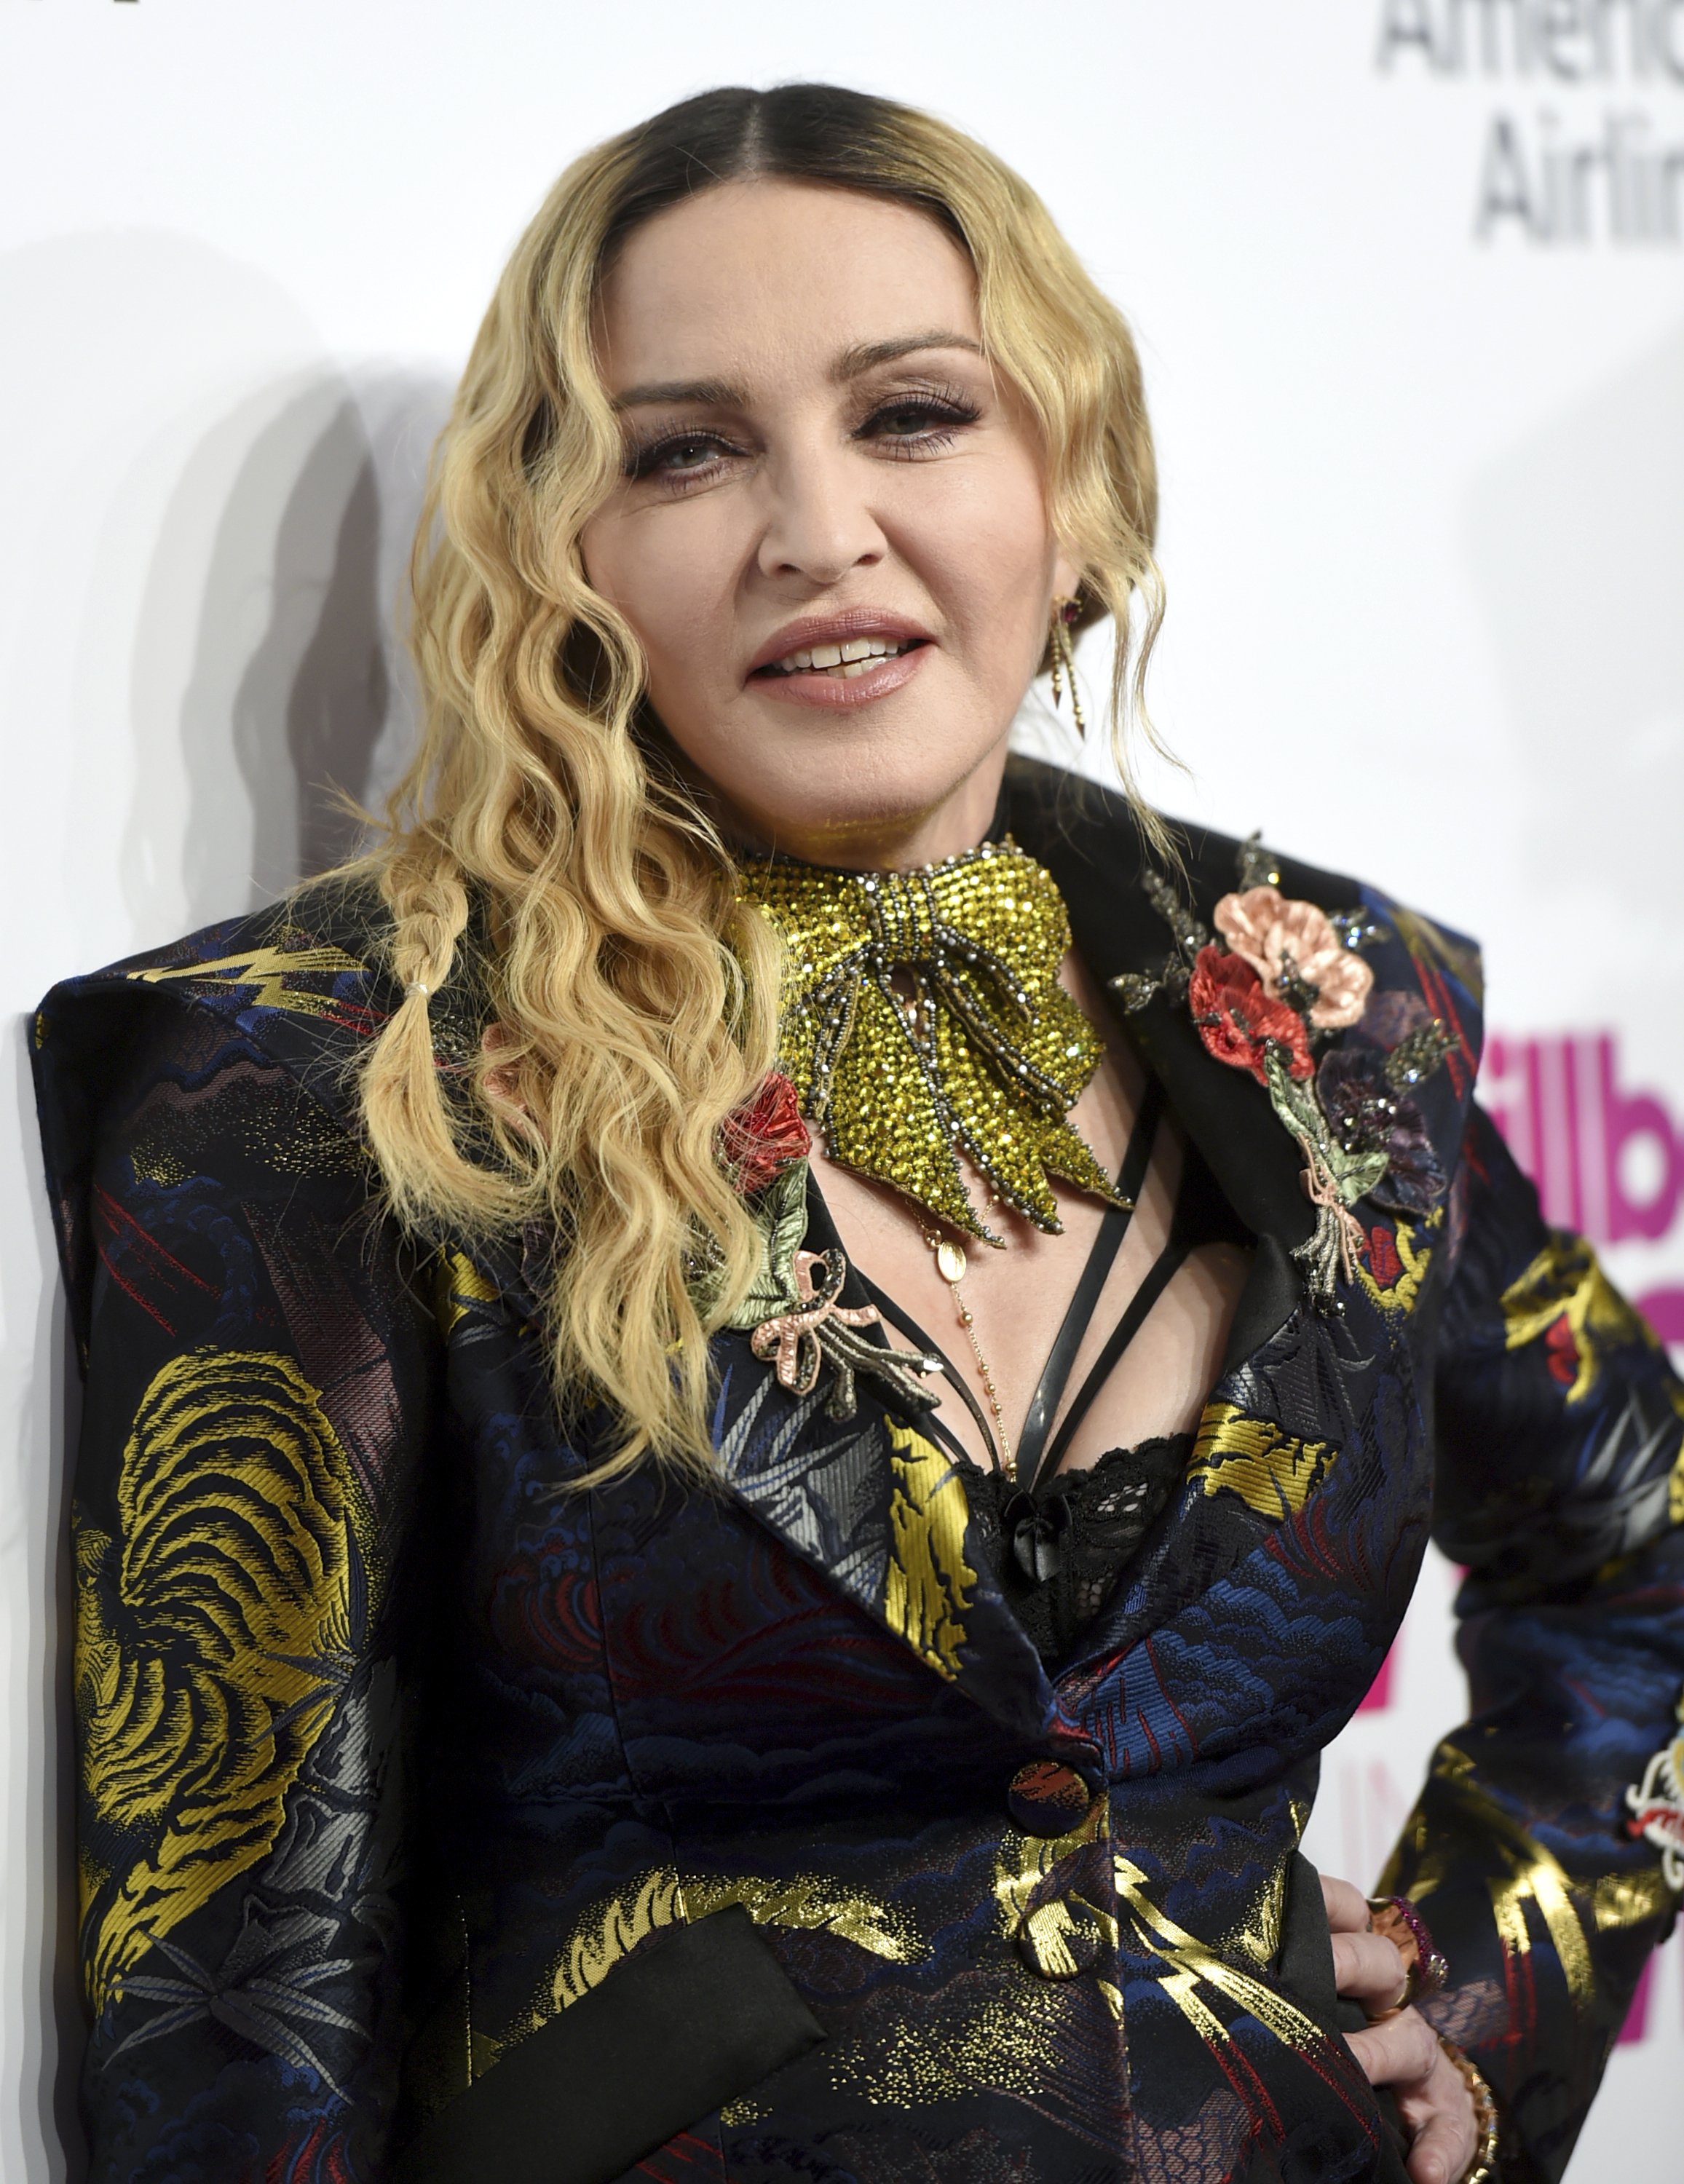 FOTOS Madonna despullada als 61 anys: pits a l'aire i nòvio de 26 fumant porros